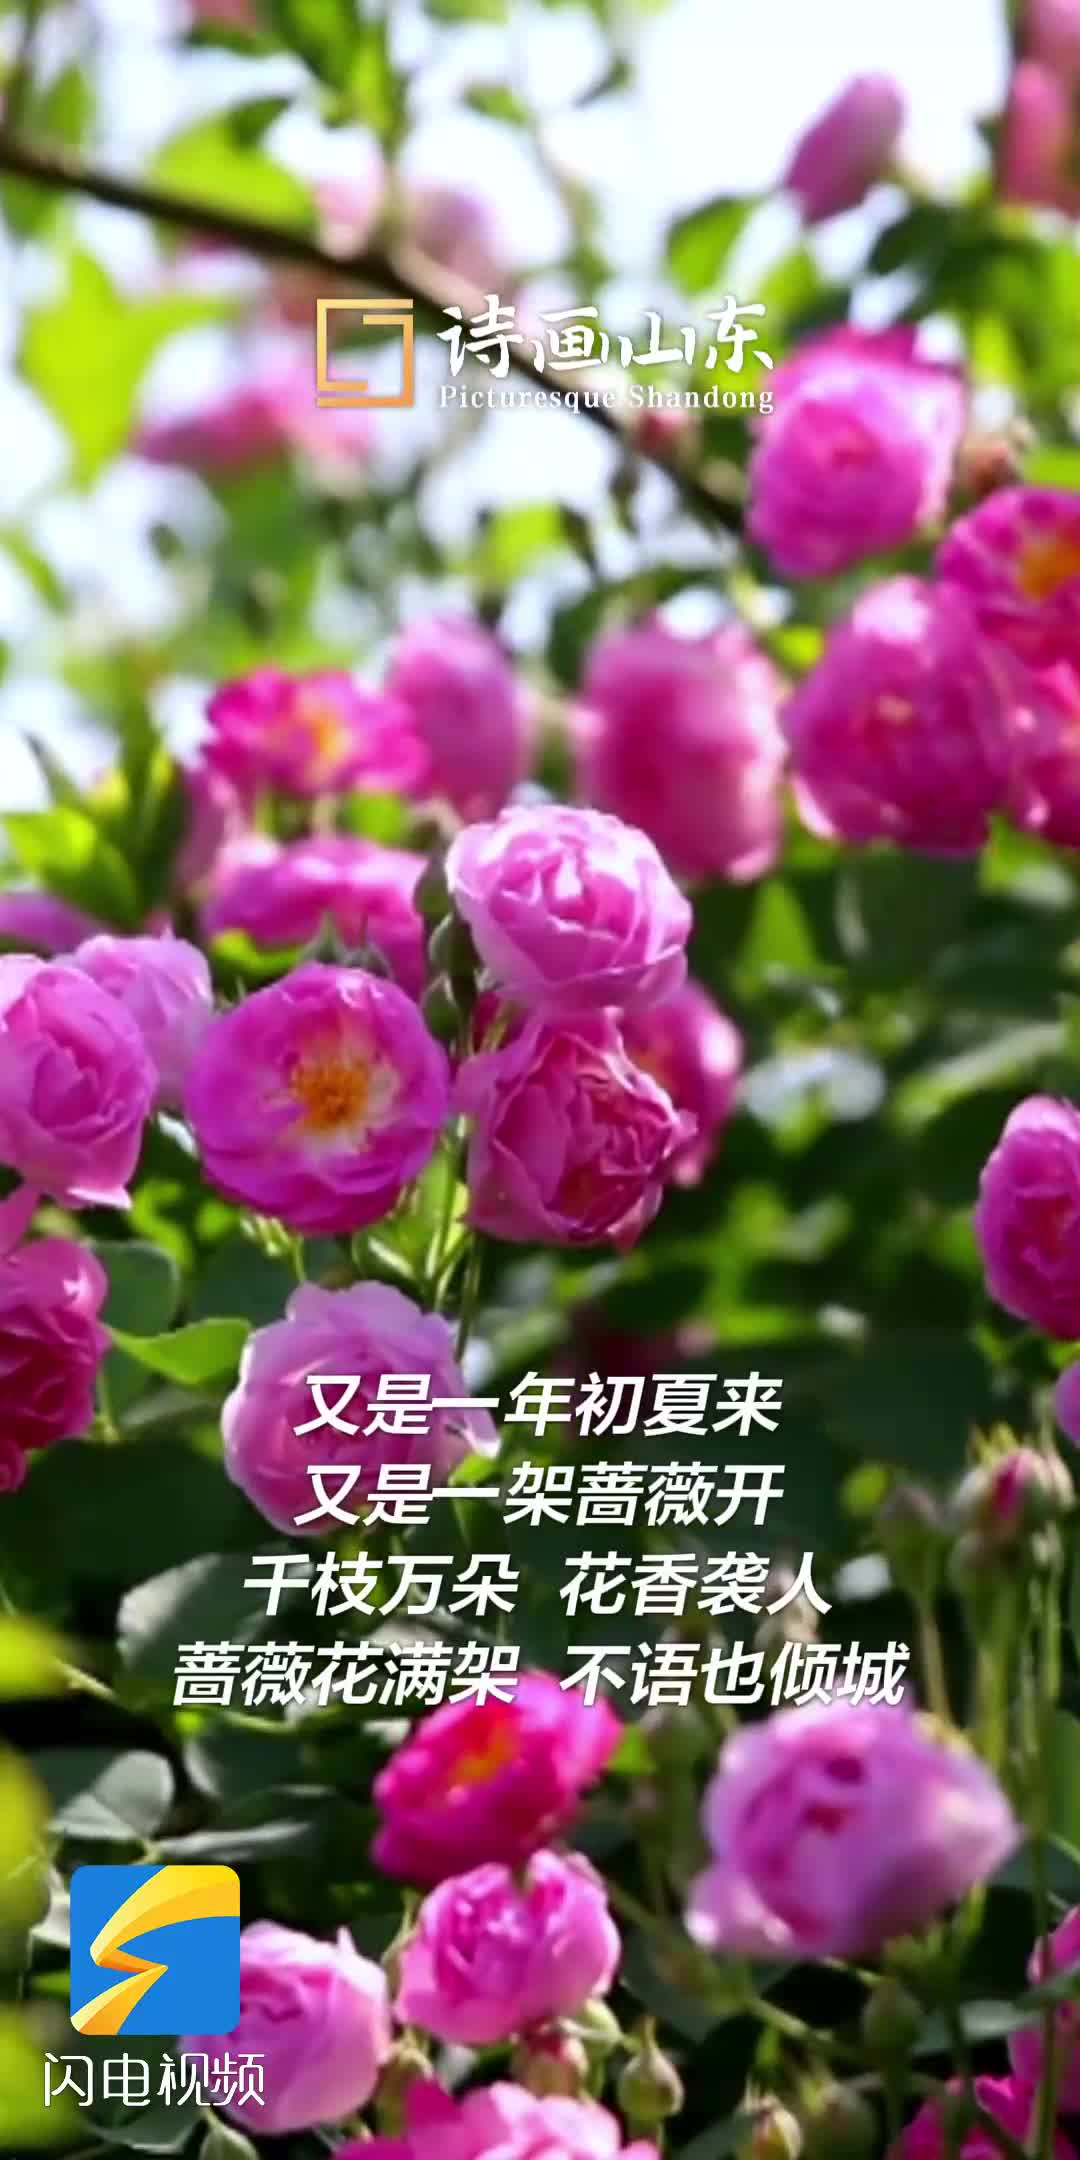 潍坊青州：蔷薇花开 满屏芬芳